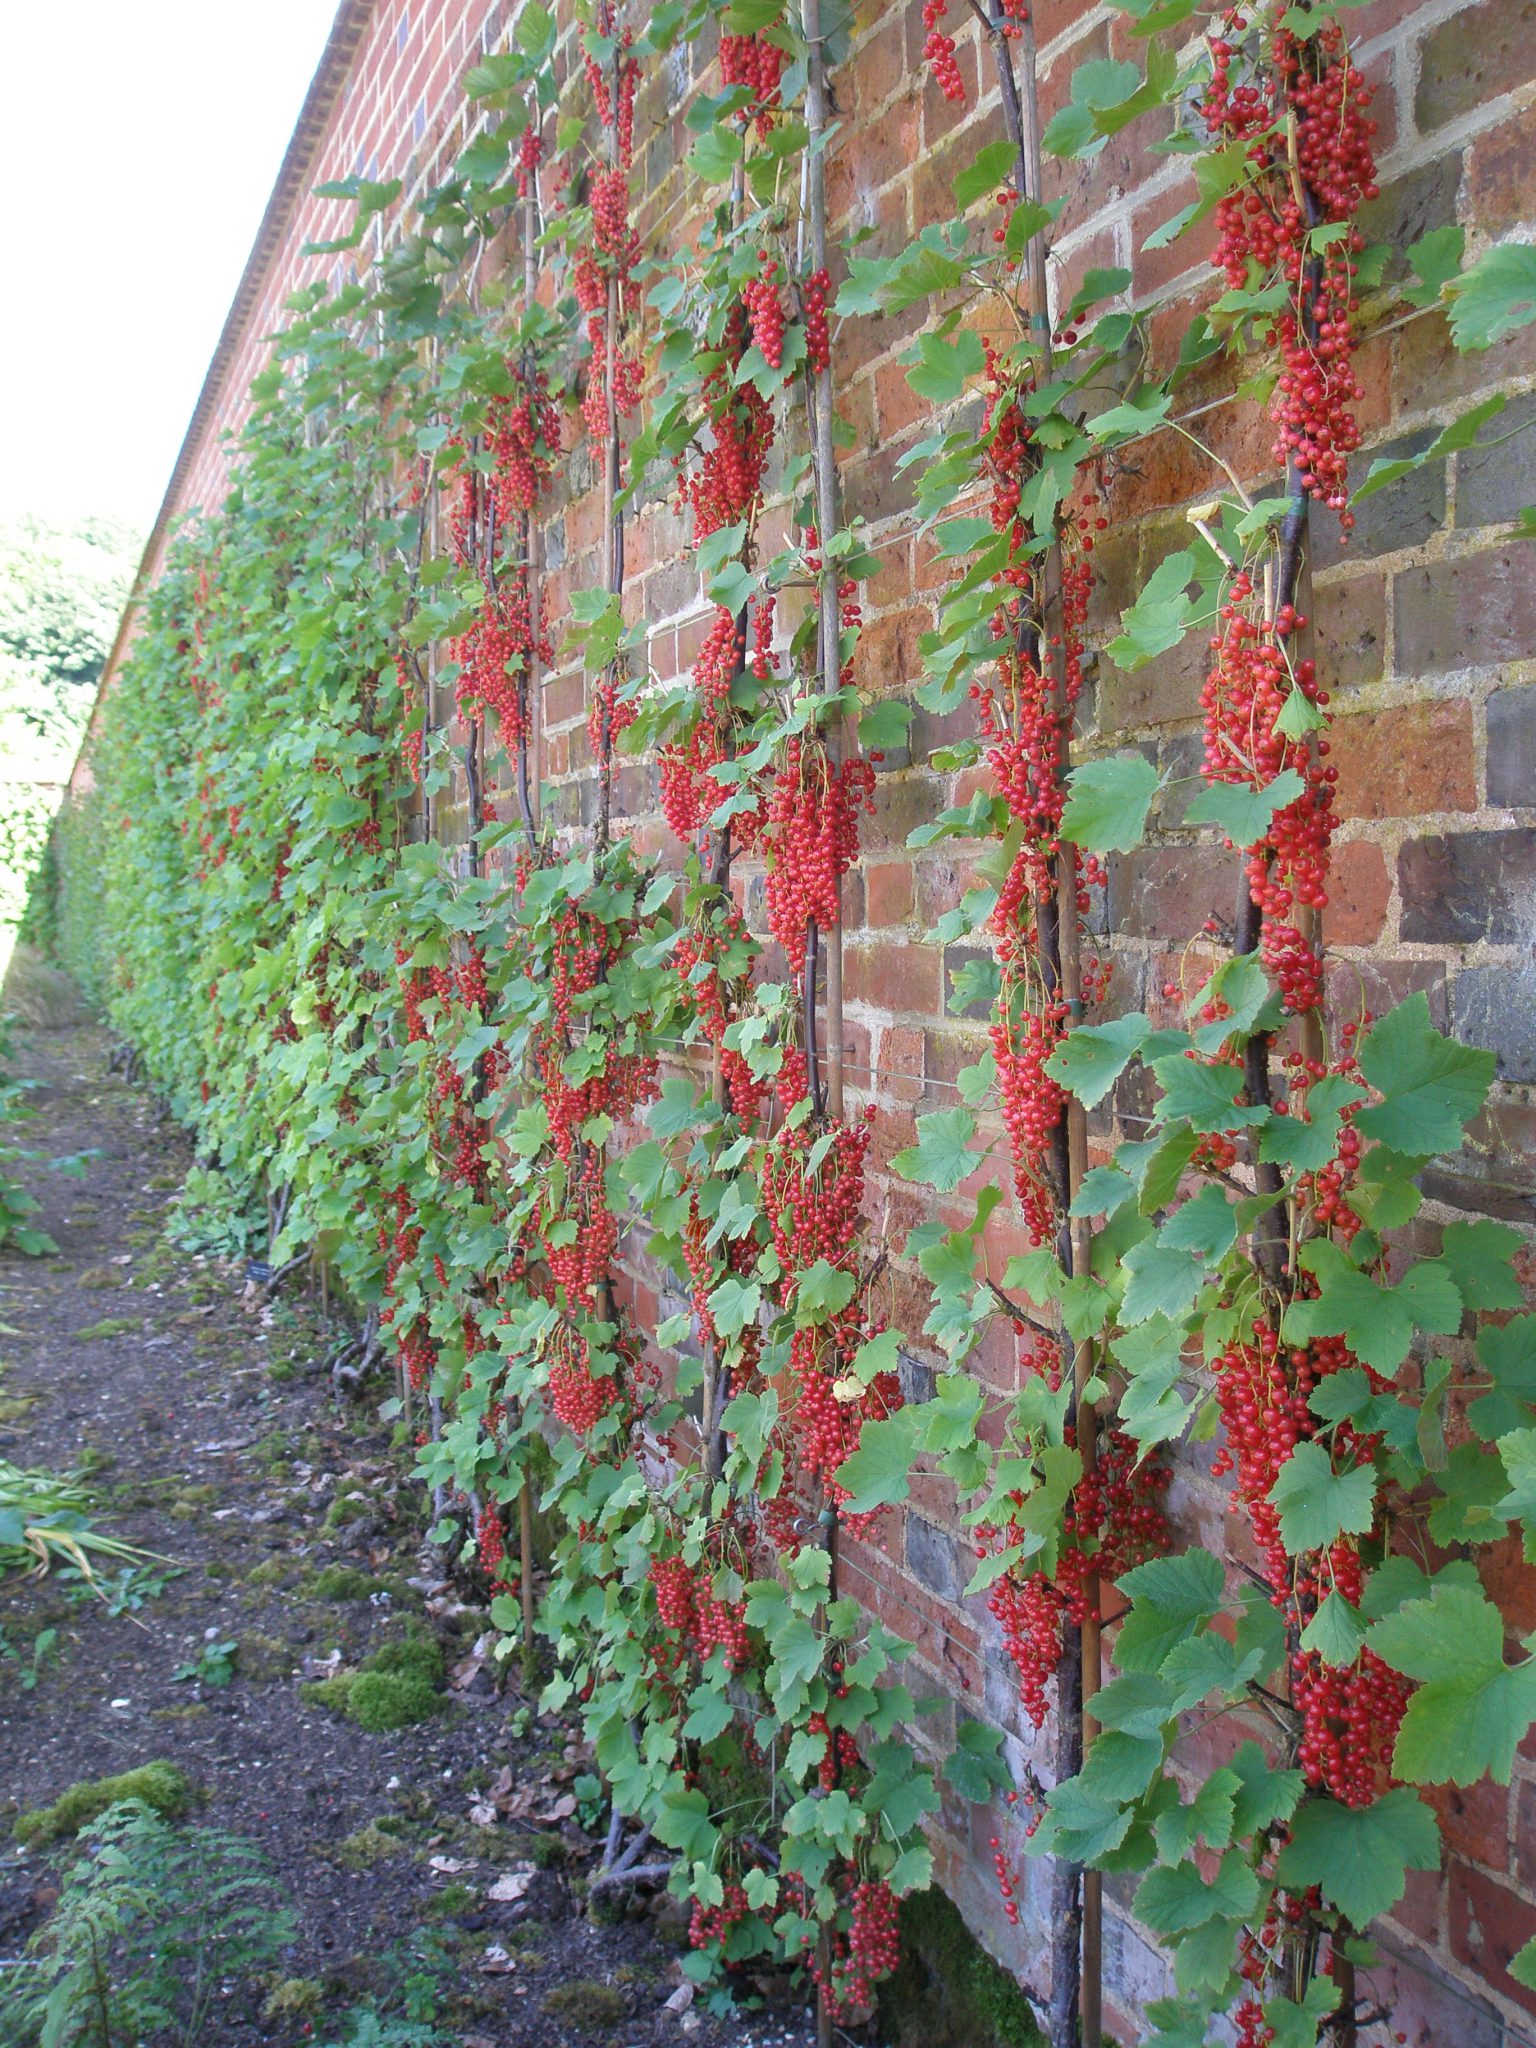 Redcurrants adorn a wall